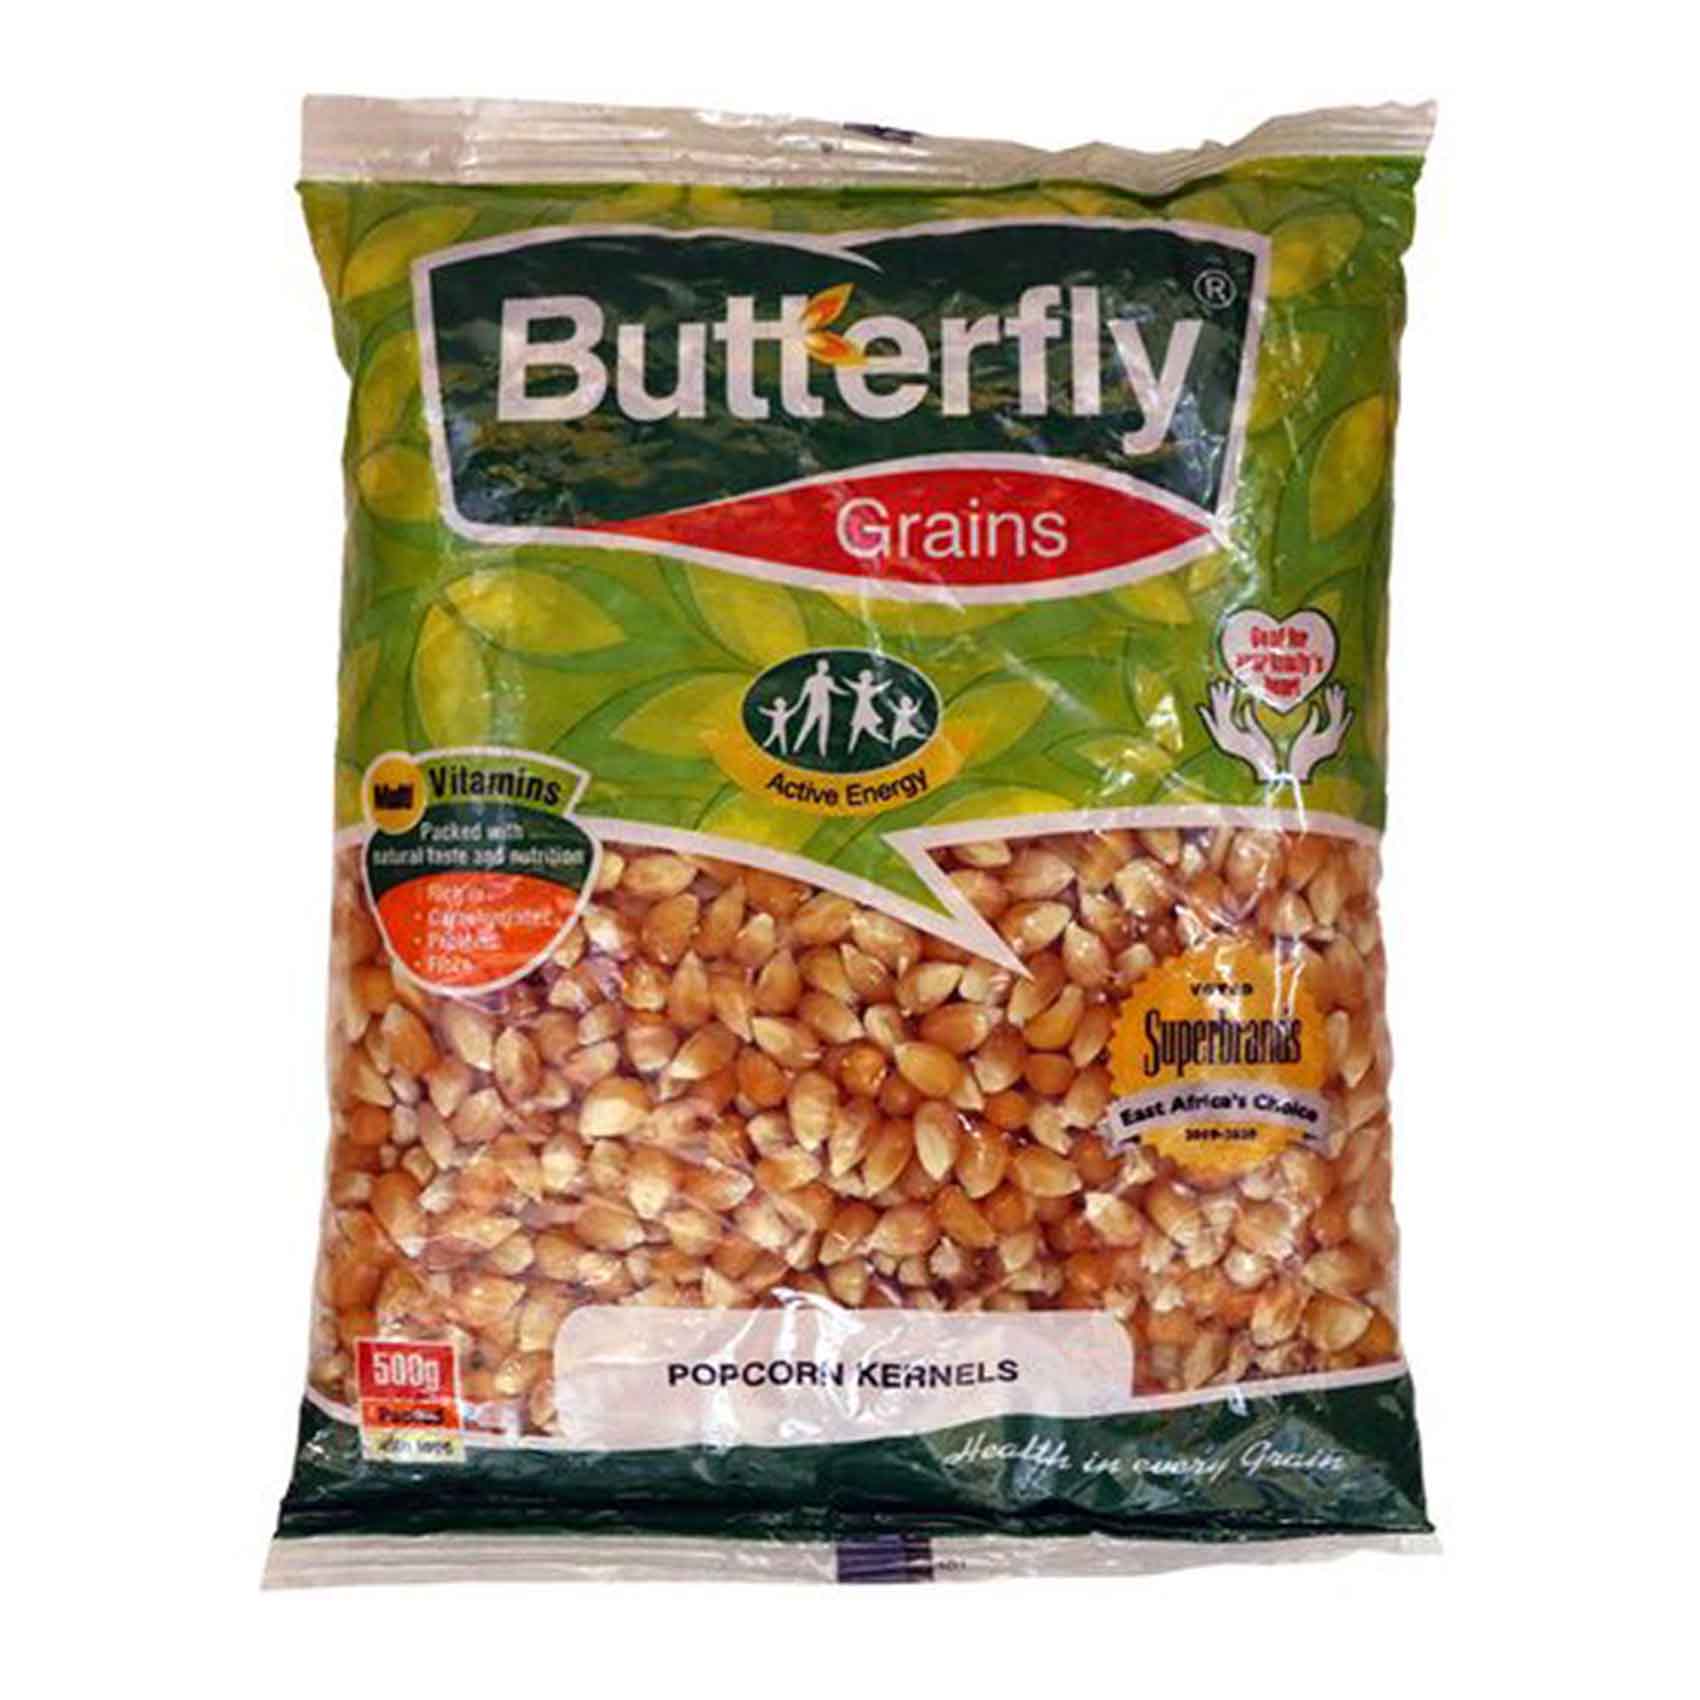 Butterfly Grains Popcorn Kernels 500g